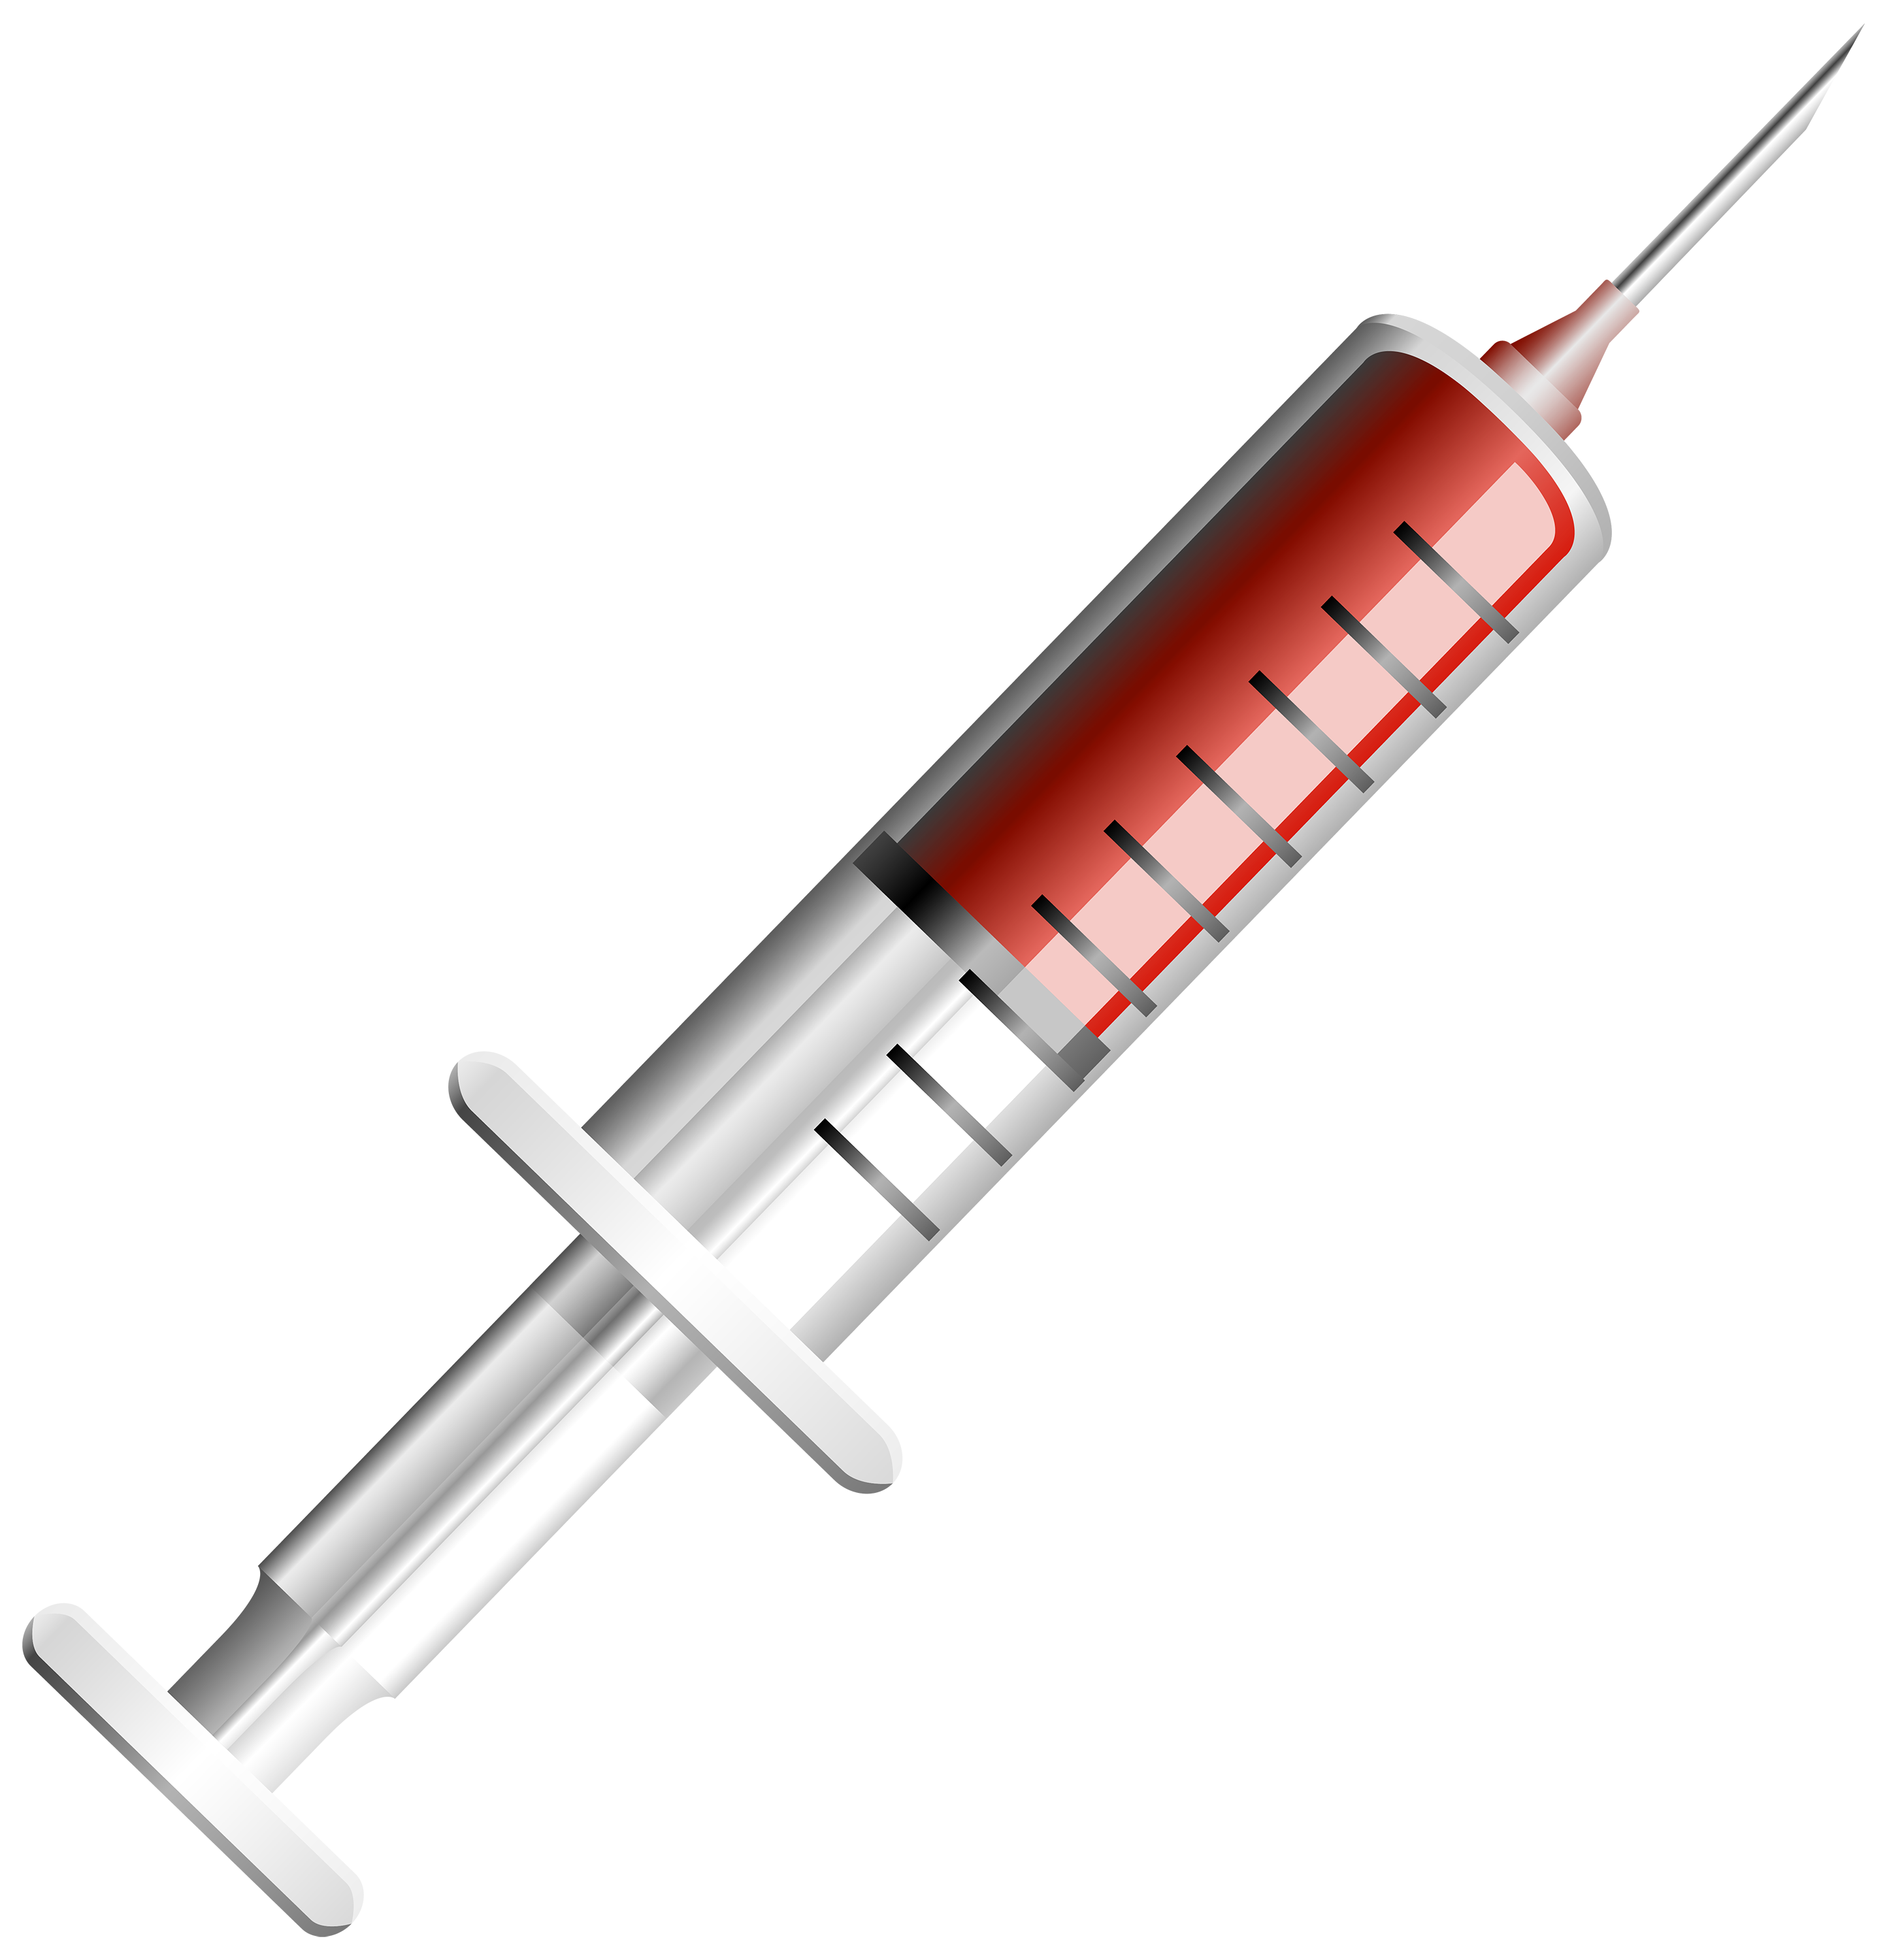 Syringe images download clipart